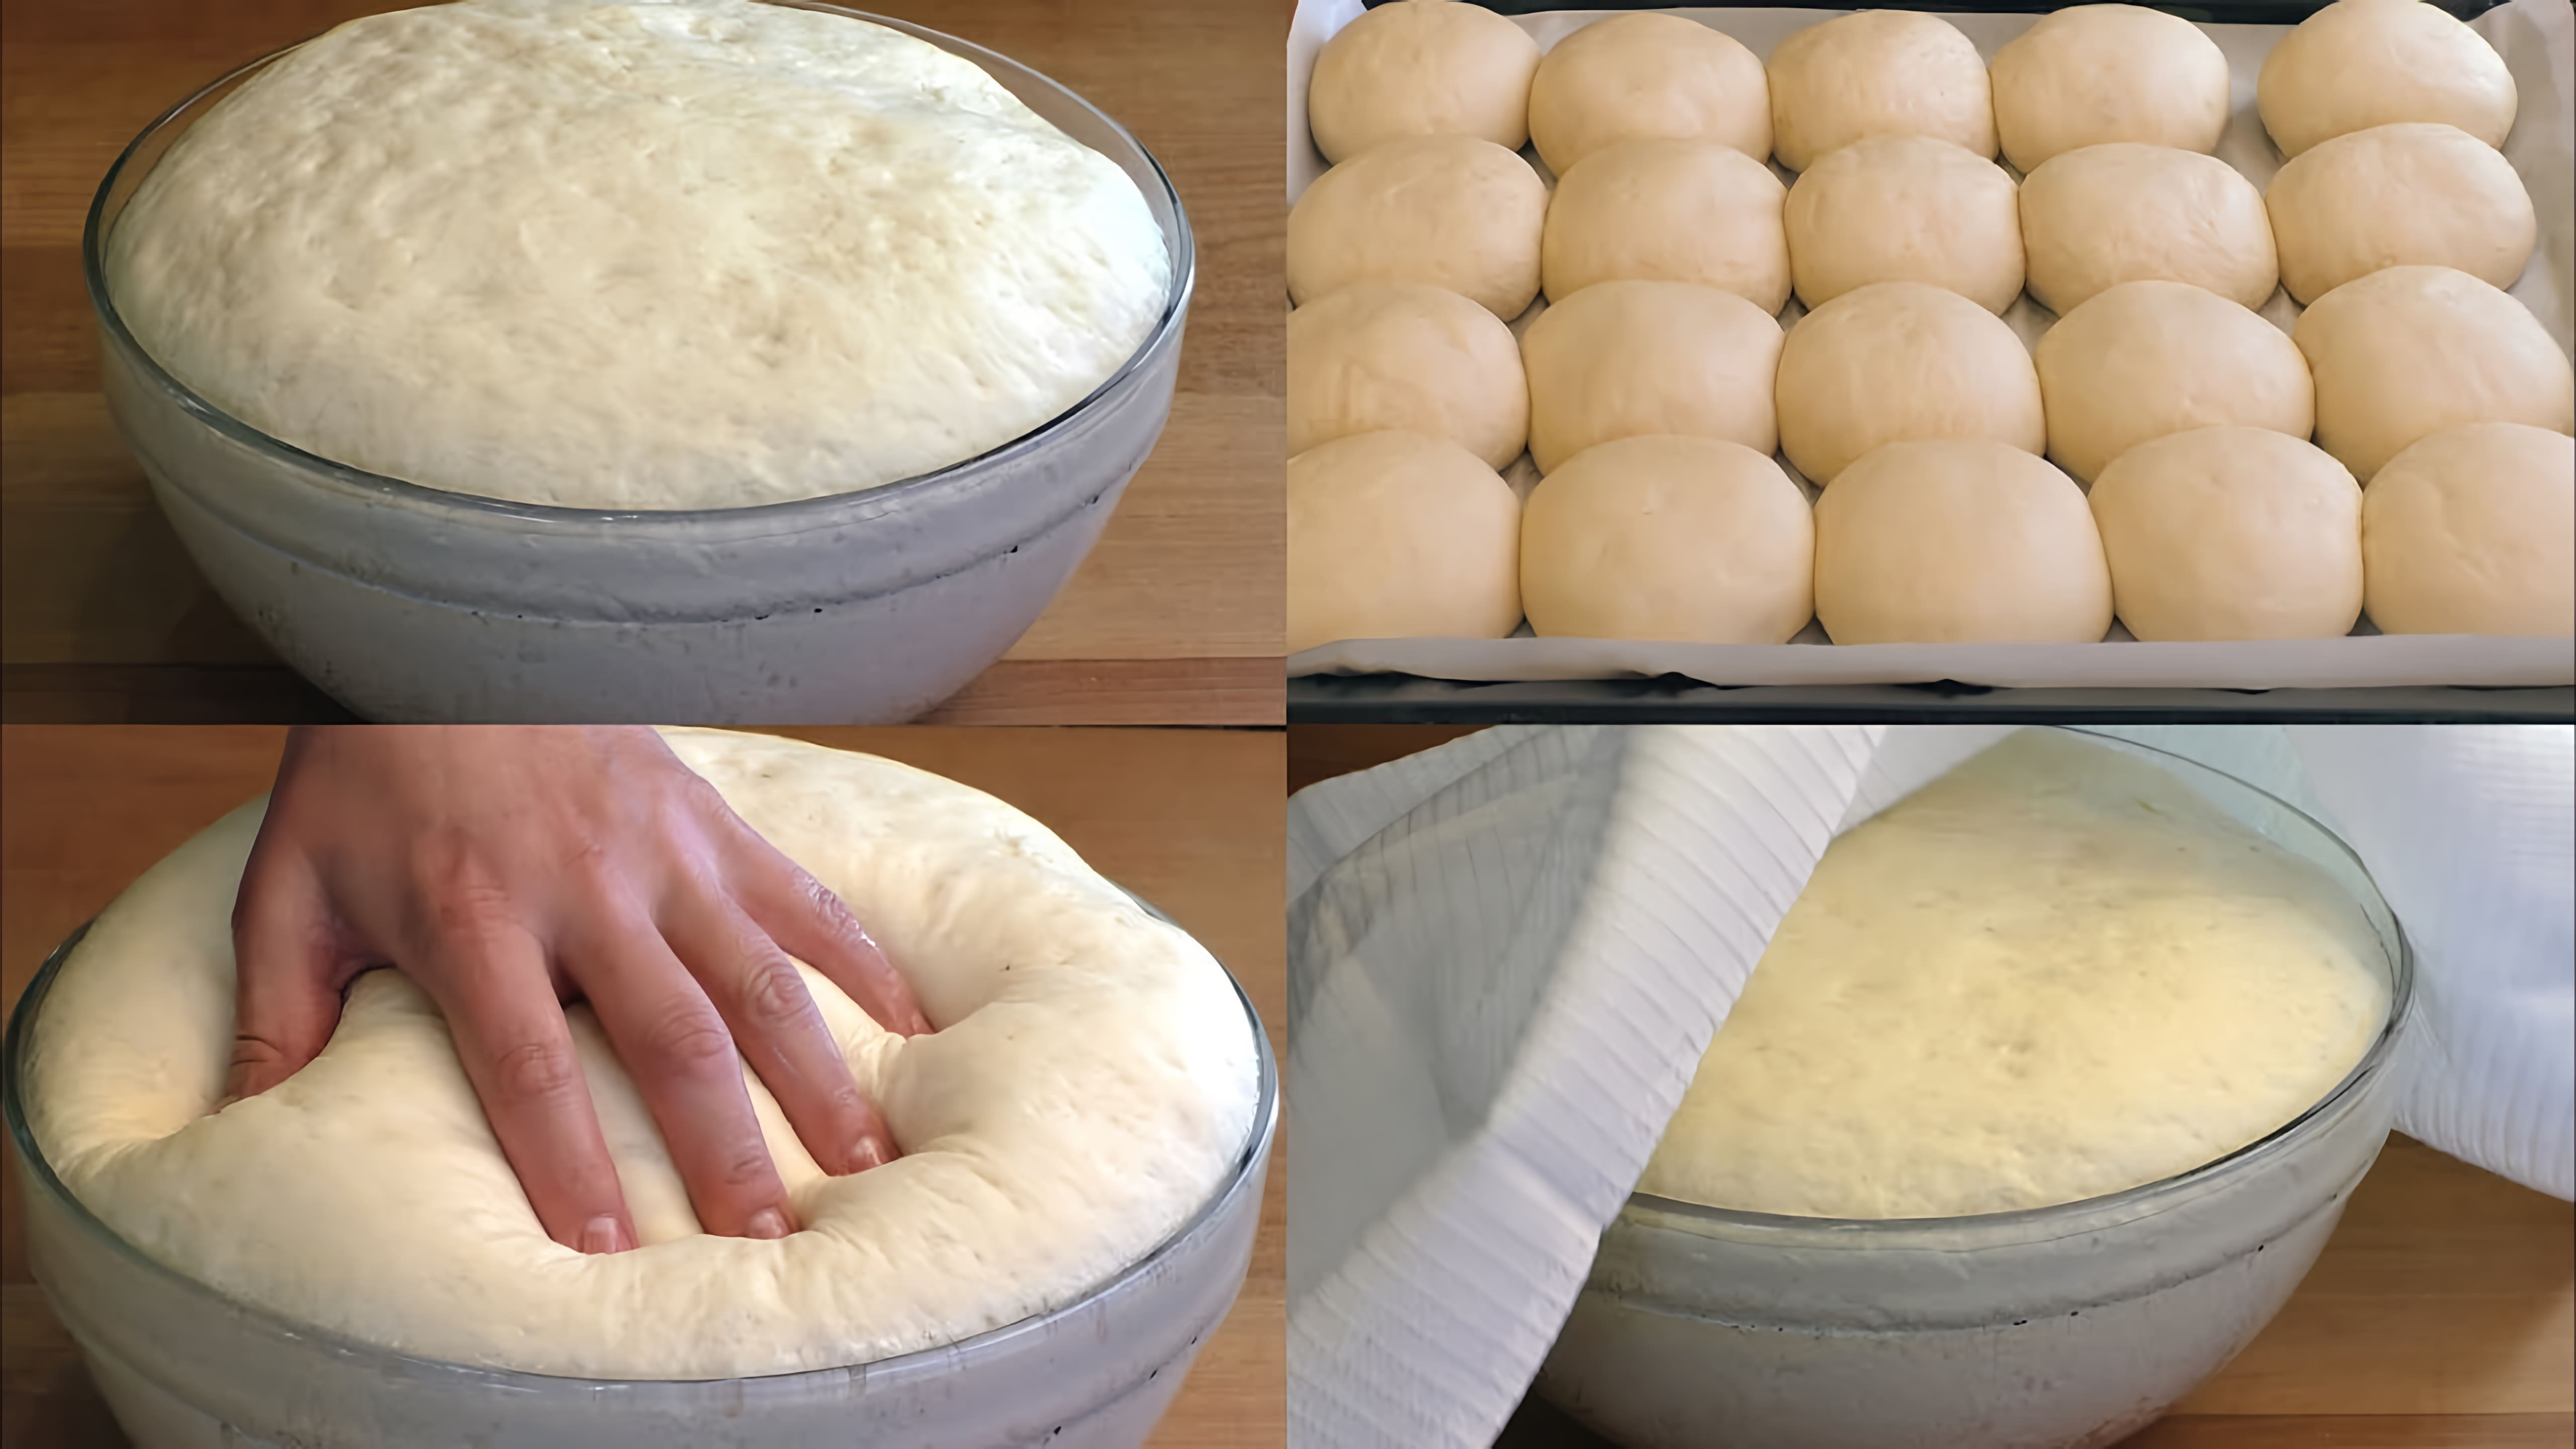 Видео рецепт универсального дрожжевого теста, которое можно использовать для различных выпечек, таких как торты, пироги, булочки, пицца и т